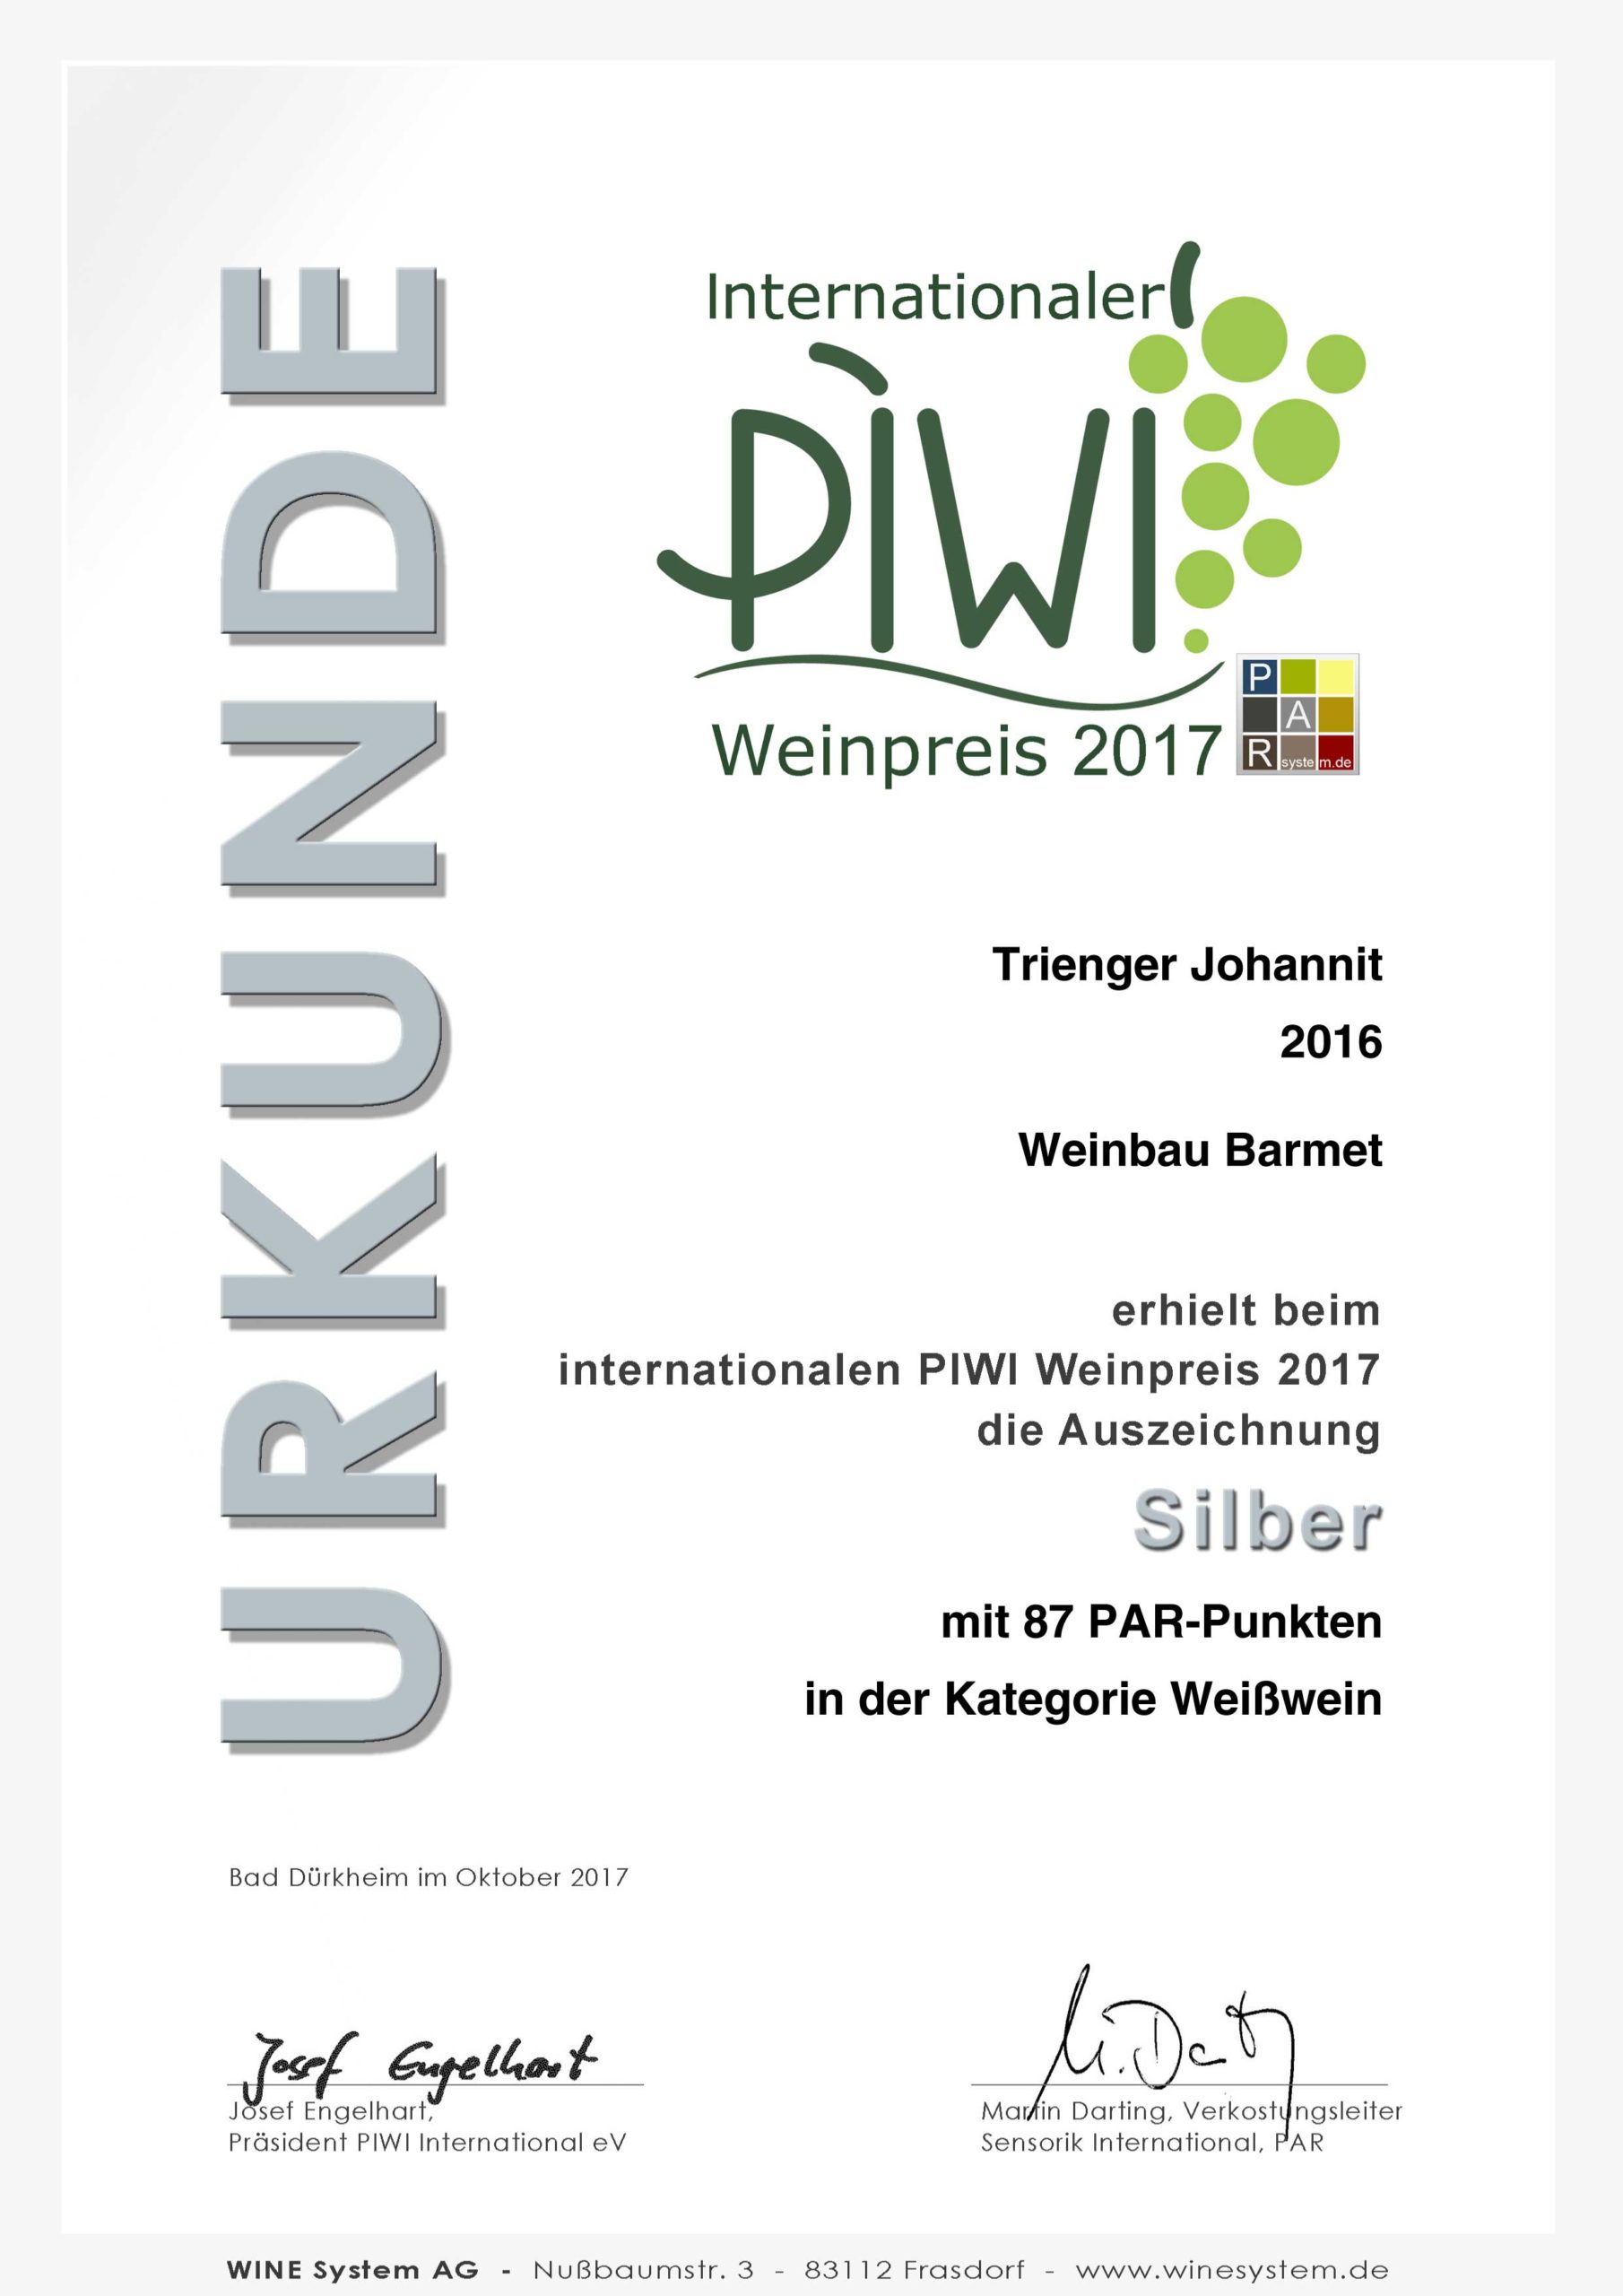 PIWI Weinpreis 2017 SILBER - Trienger Johannit 2016